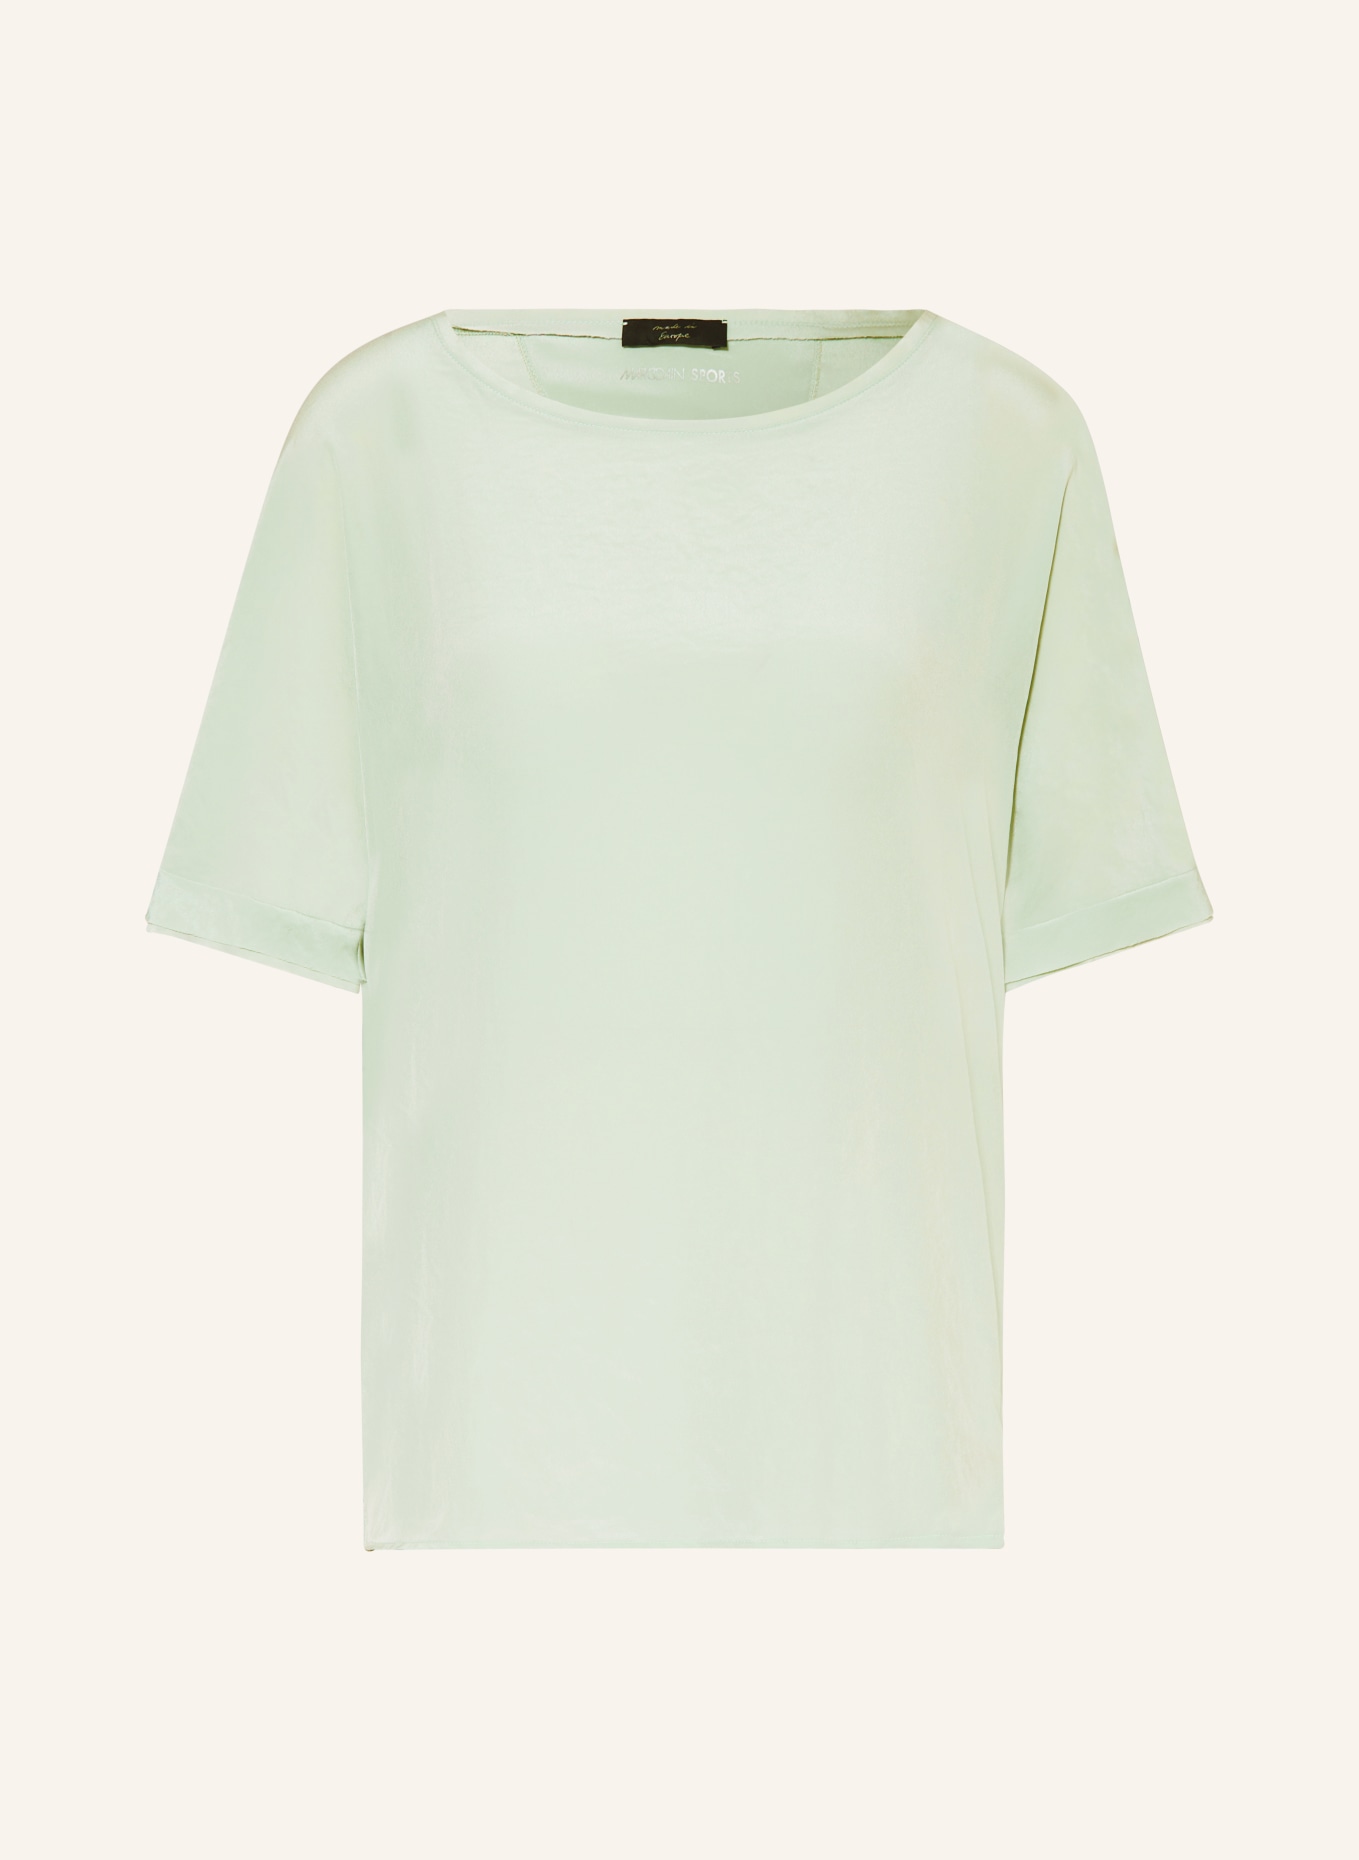 MARC CAIN Shirt blouse, Color: 509 soft sage (Image 1)